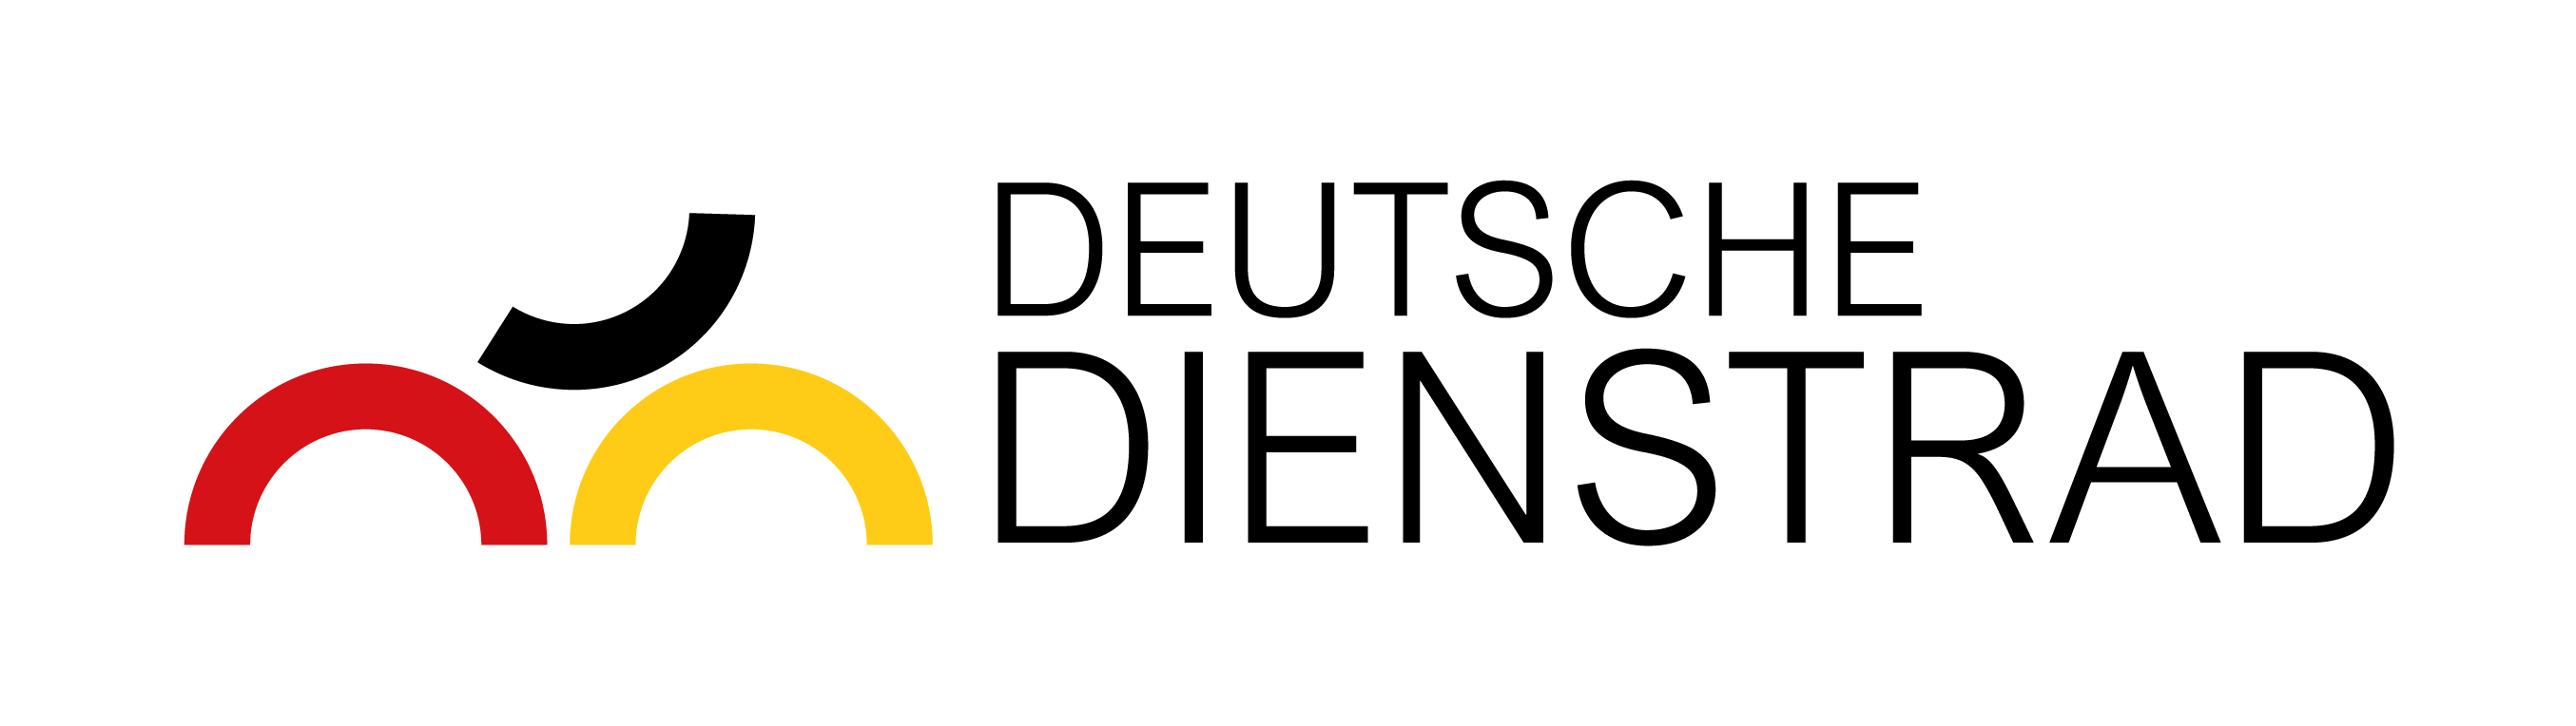 Deutsche-Dienstrad-Leasing-Logo